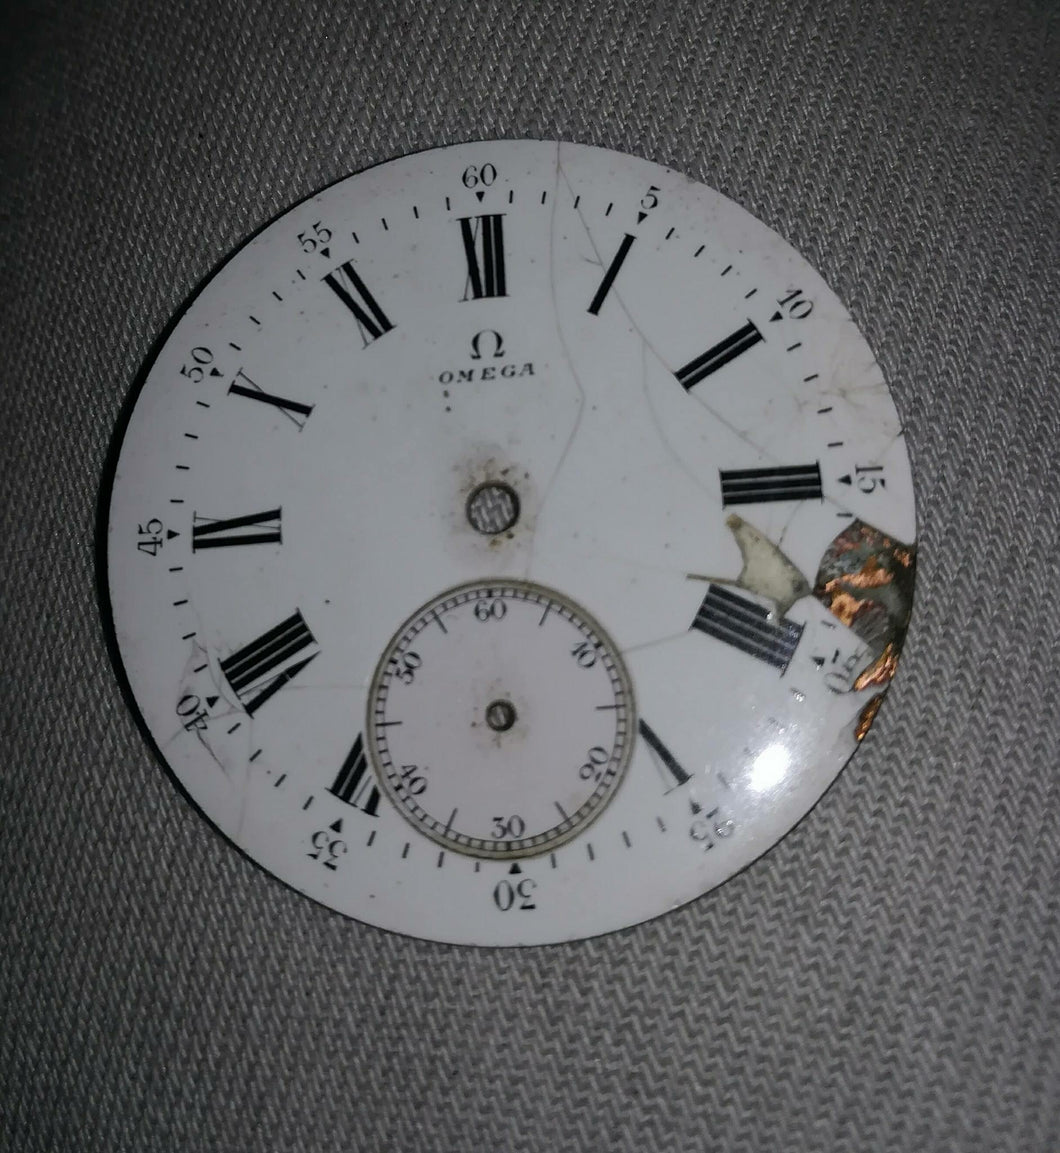 Enamel or painted dial restoration